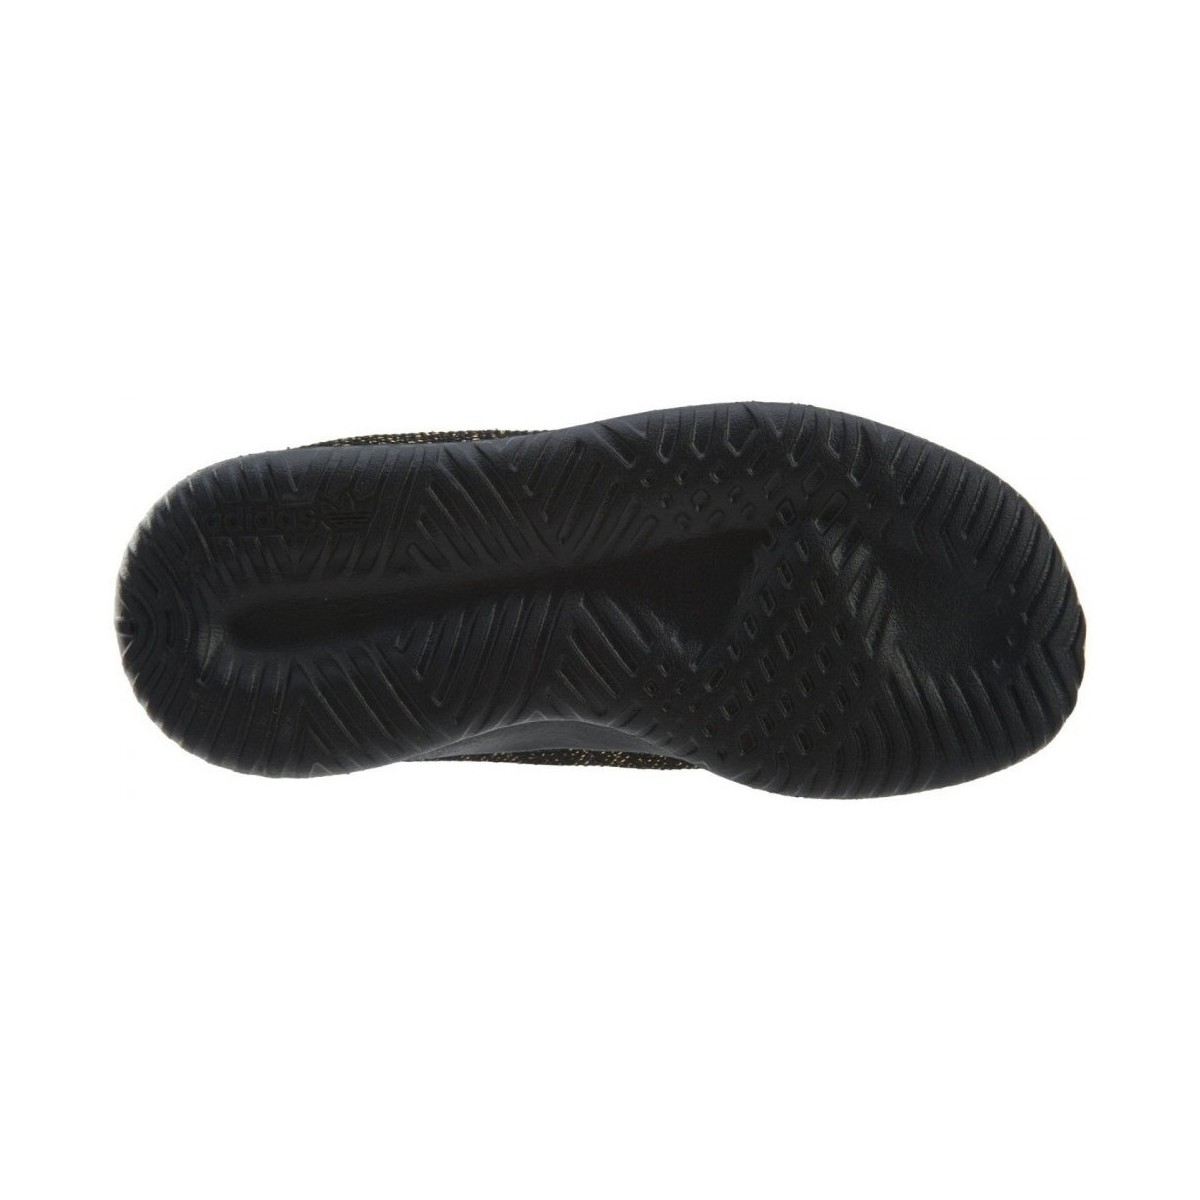 adidas Originals Noir Tubular Shadow vYw9y86g